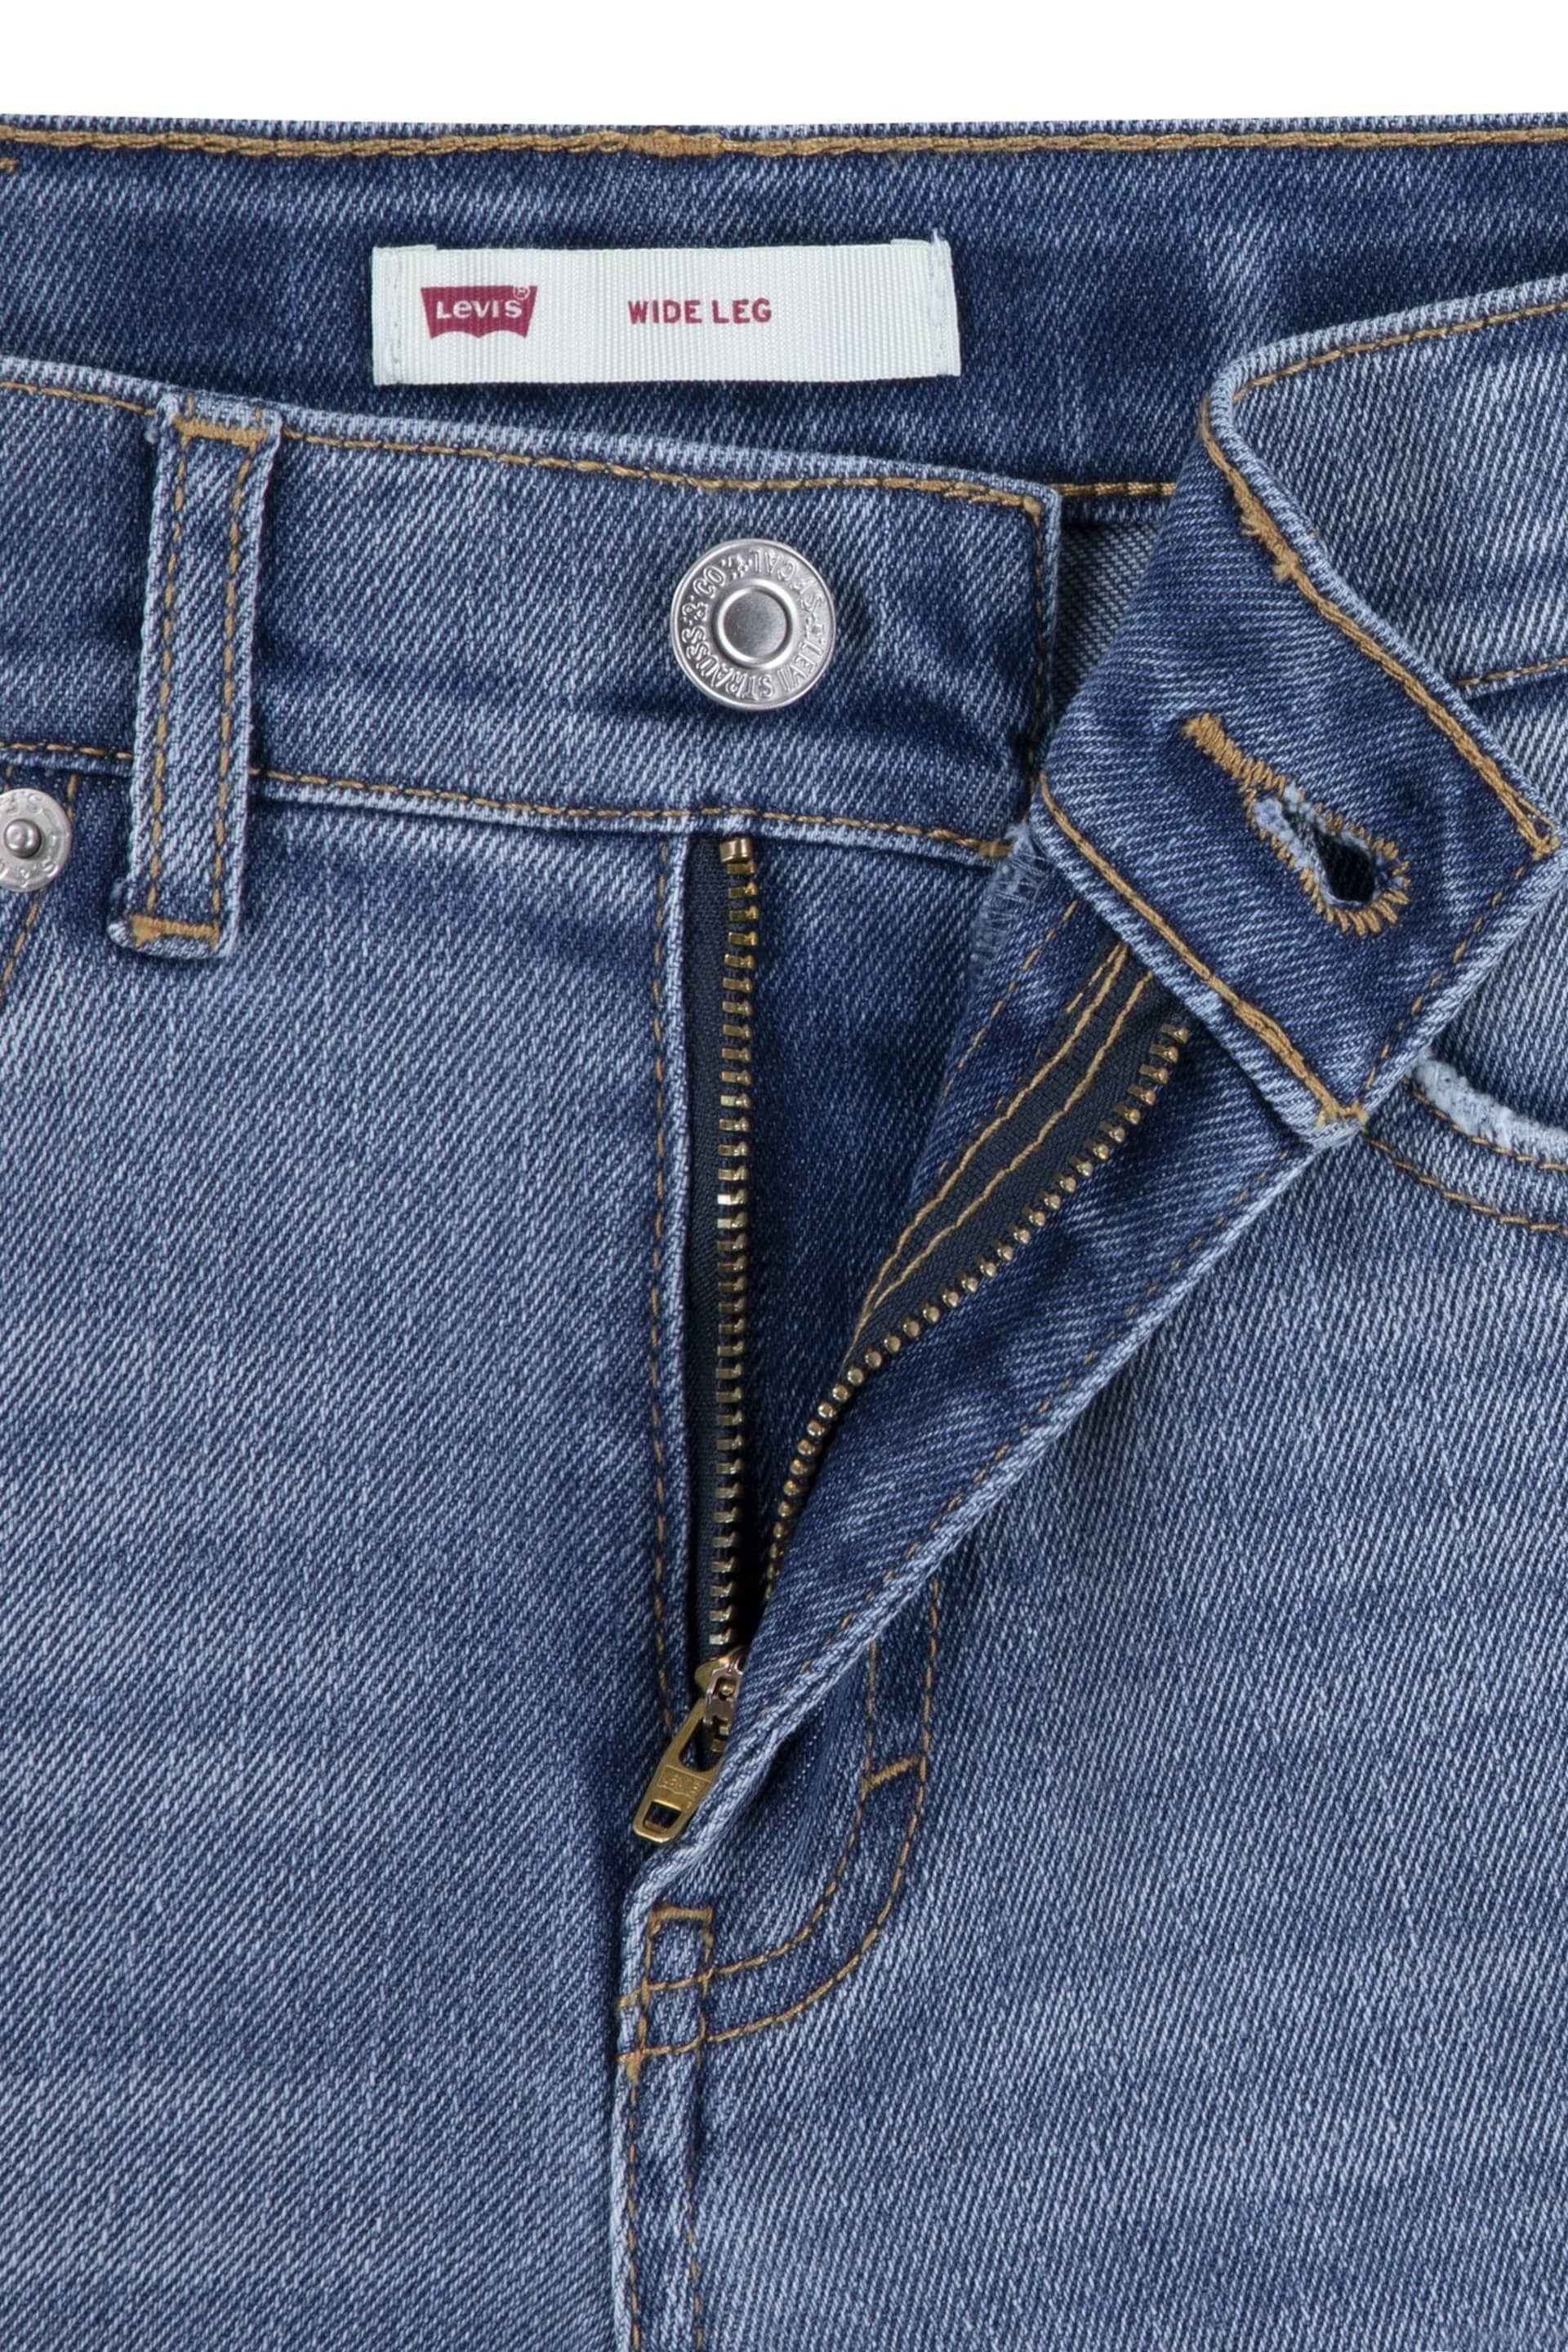 Levi's® Blue Wide Leg Denim Jeans - Image 3 of 4